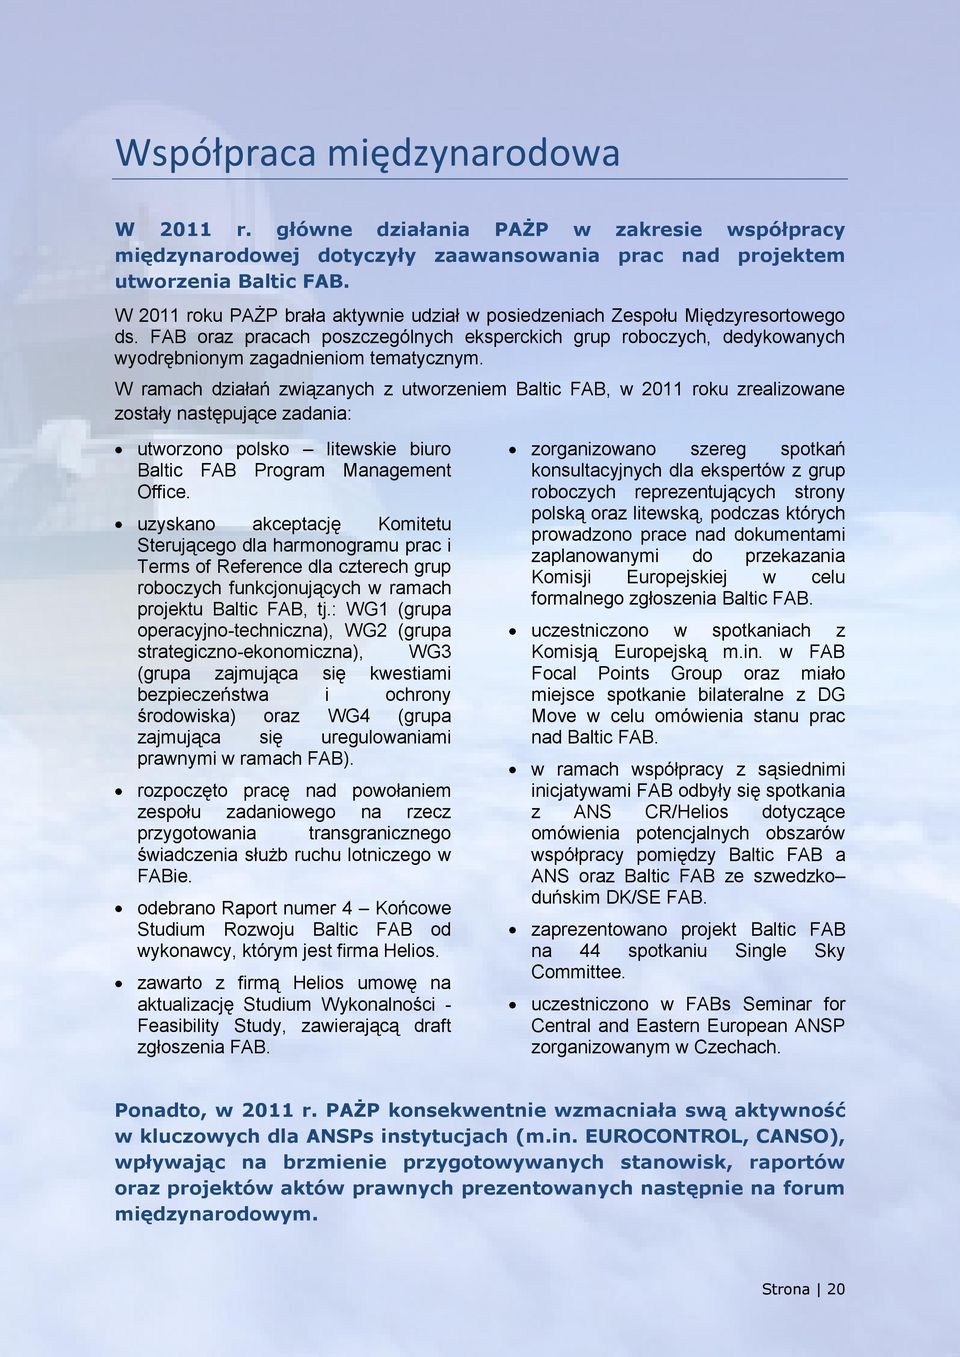 W ramach działań związanych z utworzeniem Baltic FAB, w 2011 roku zrealizowane zostały następujące zadania: utworzono polsko litewskie biuro Baltic FAB Program Management Office.